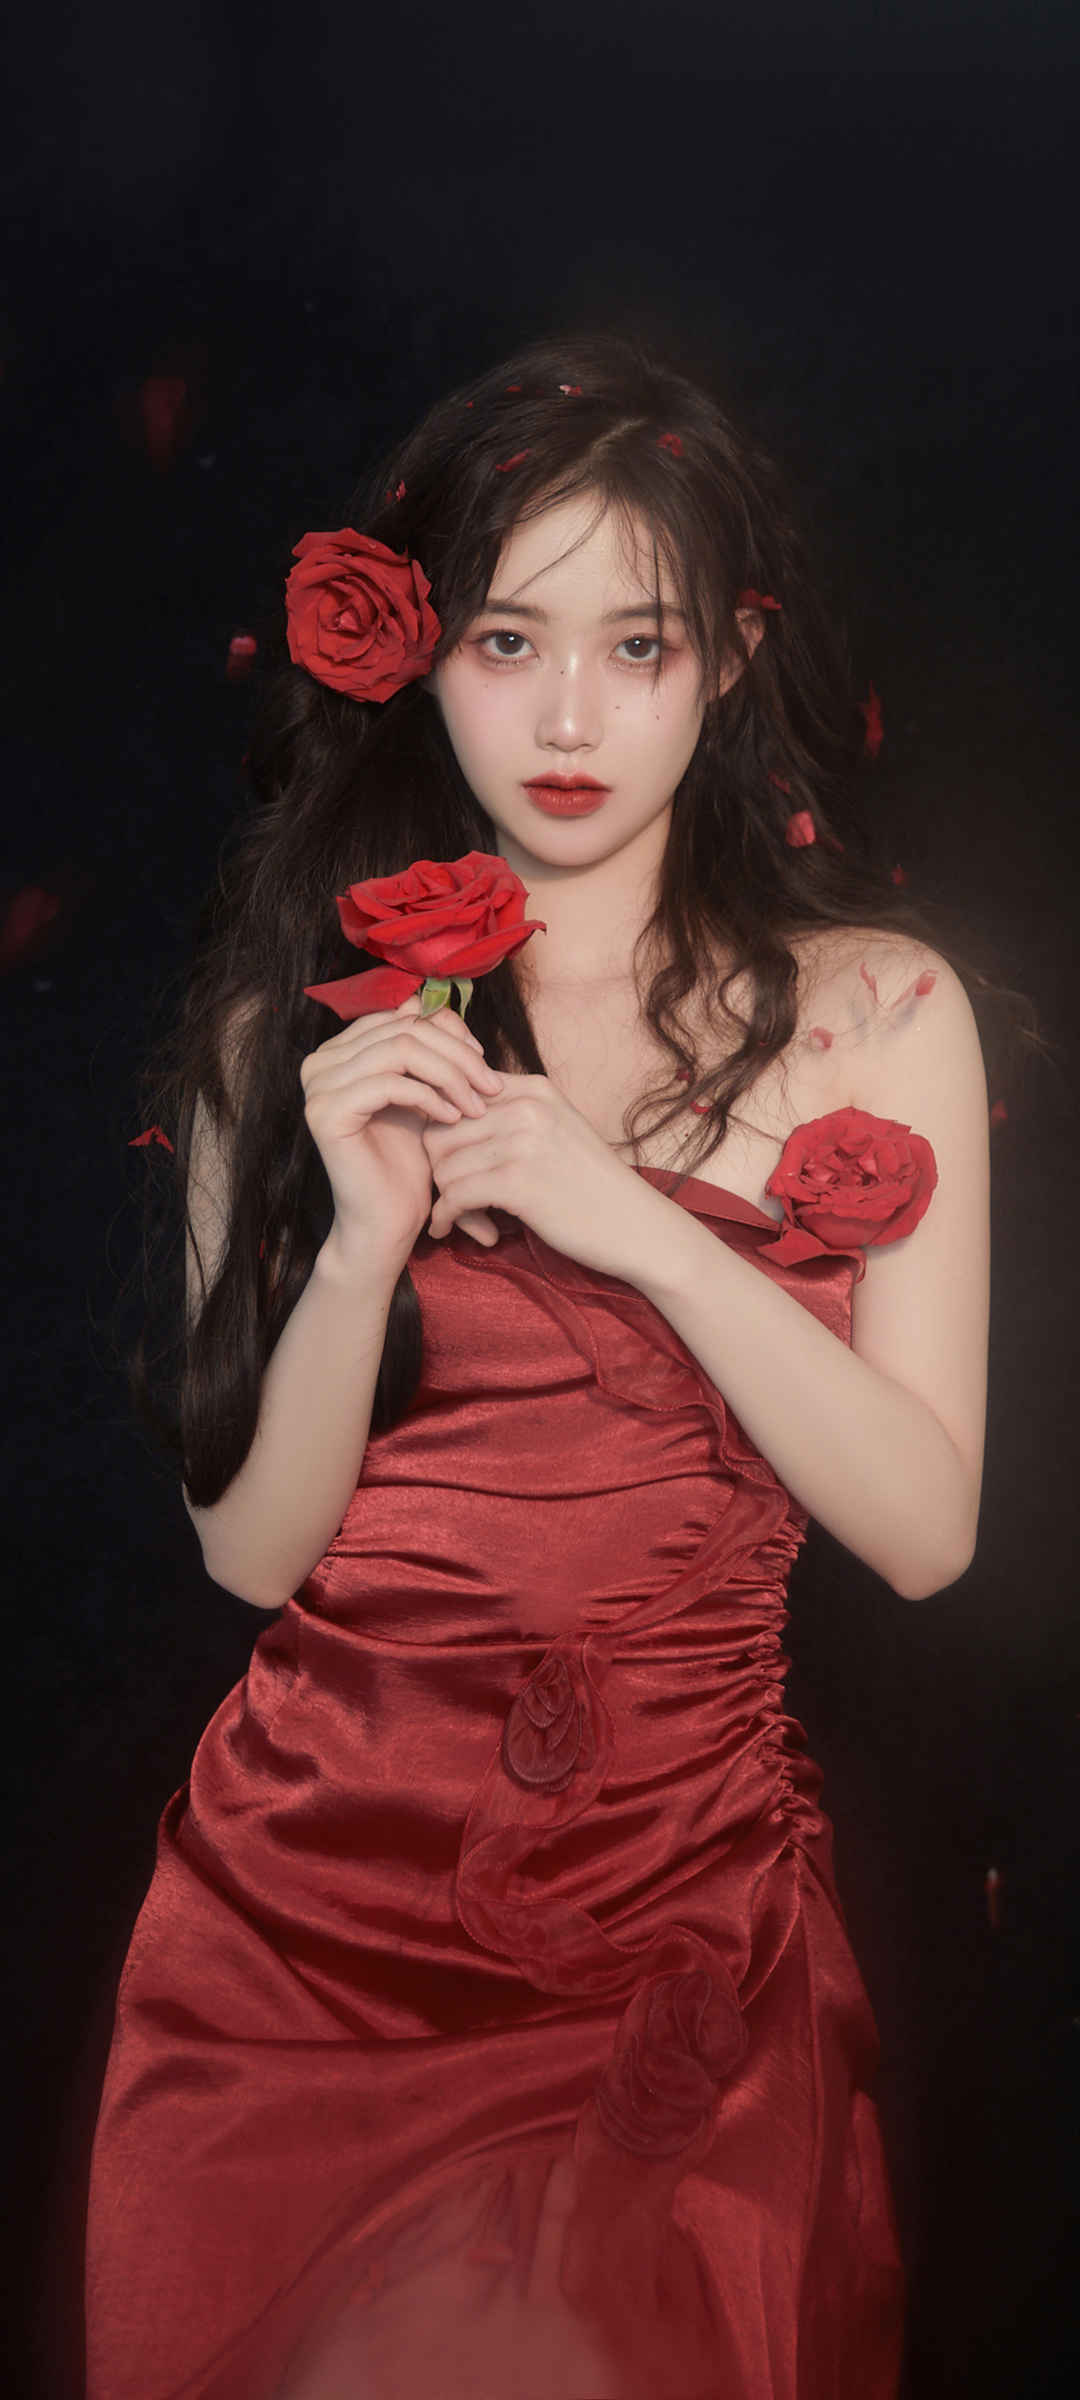 玫瑰花红色裙子礼服美女手机壁纸-